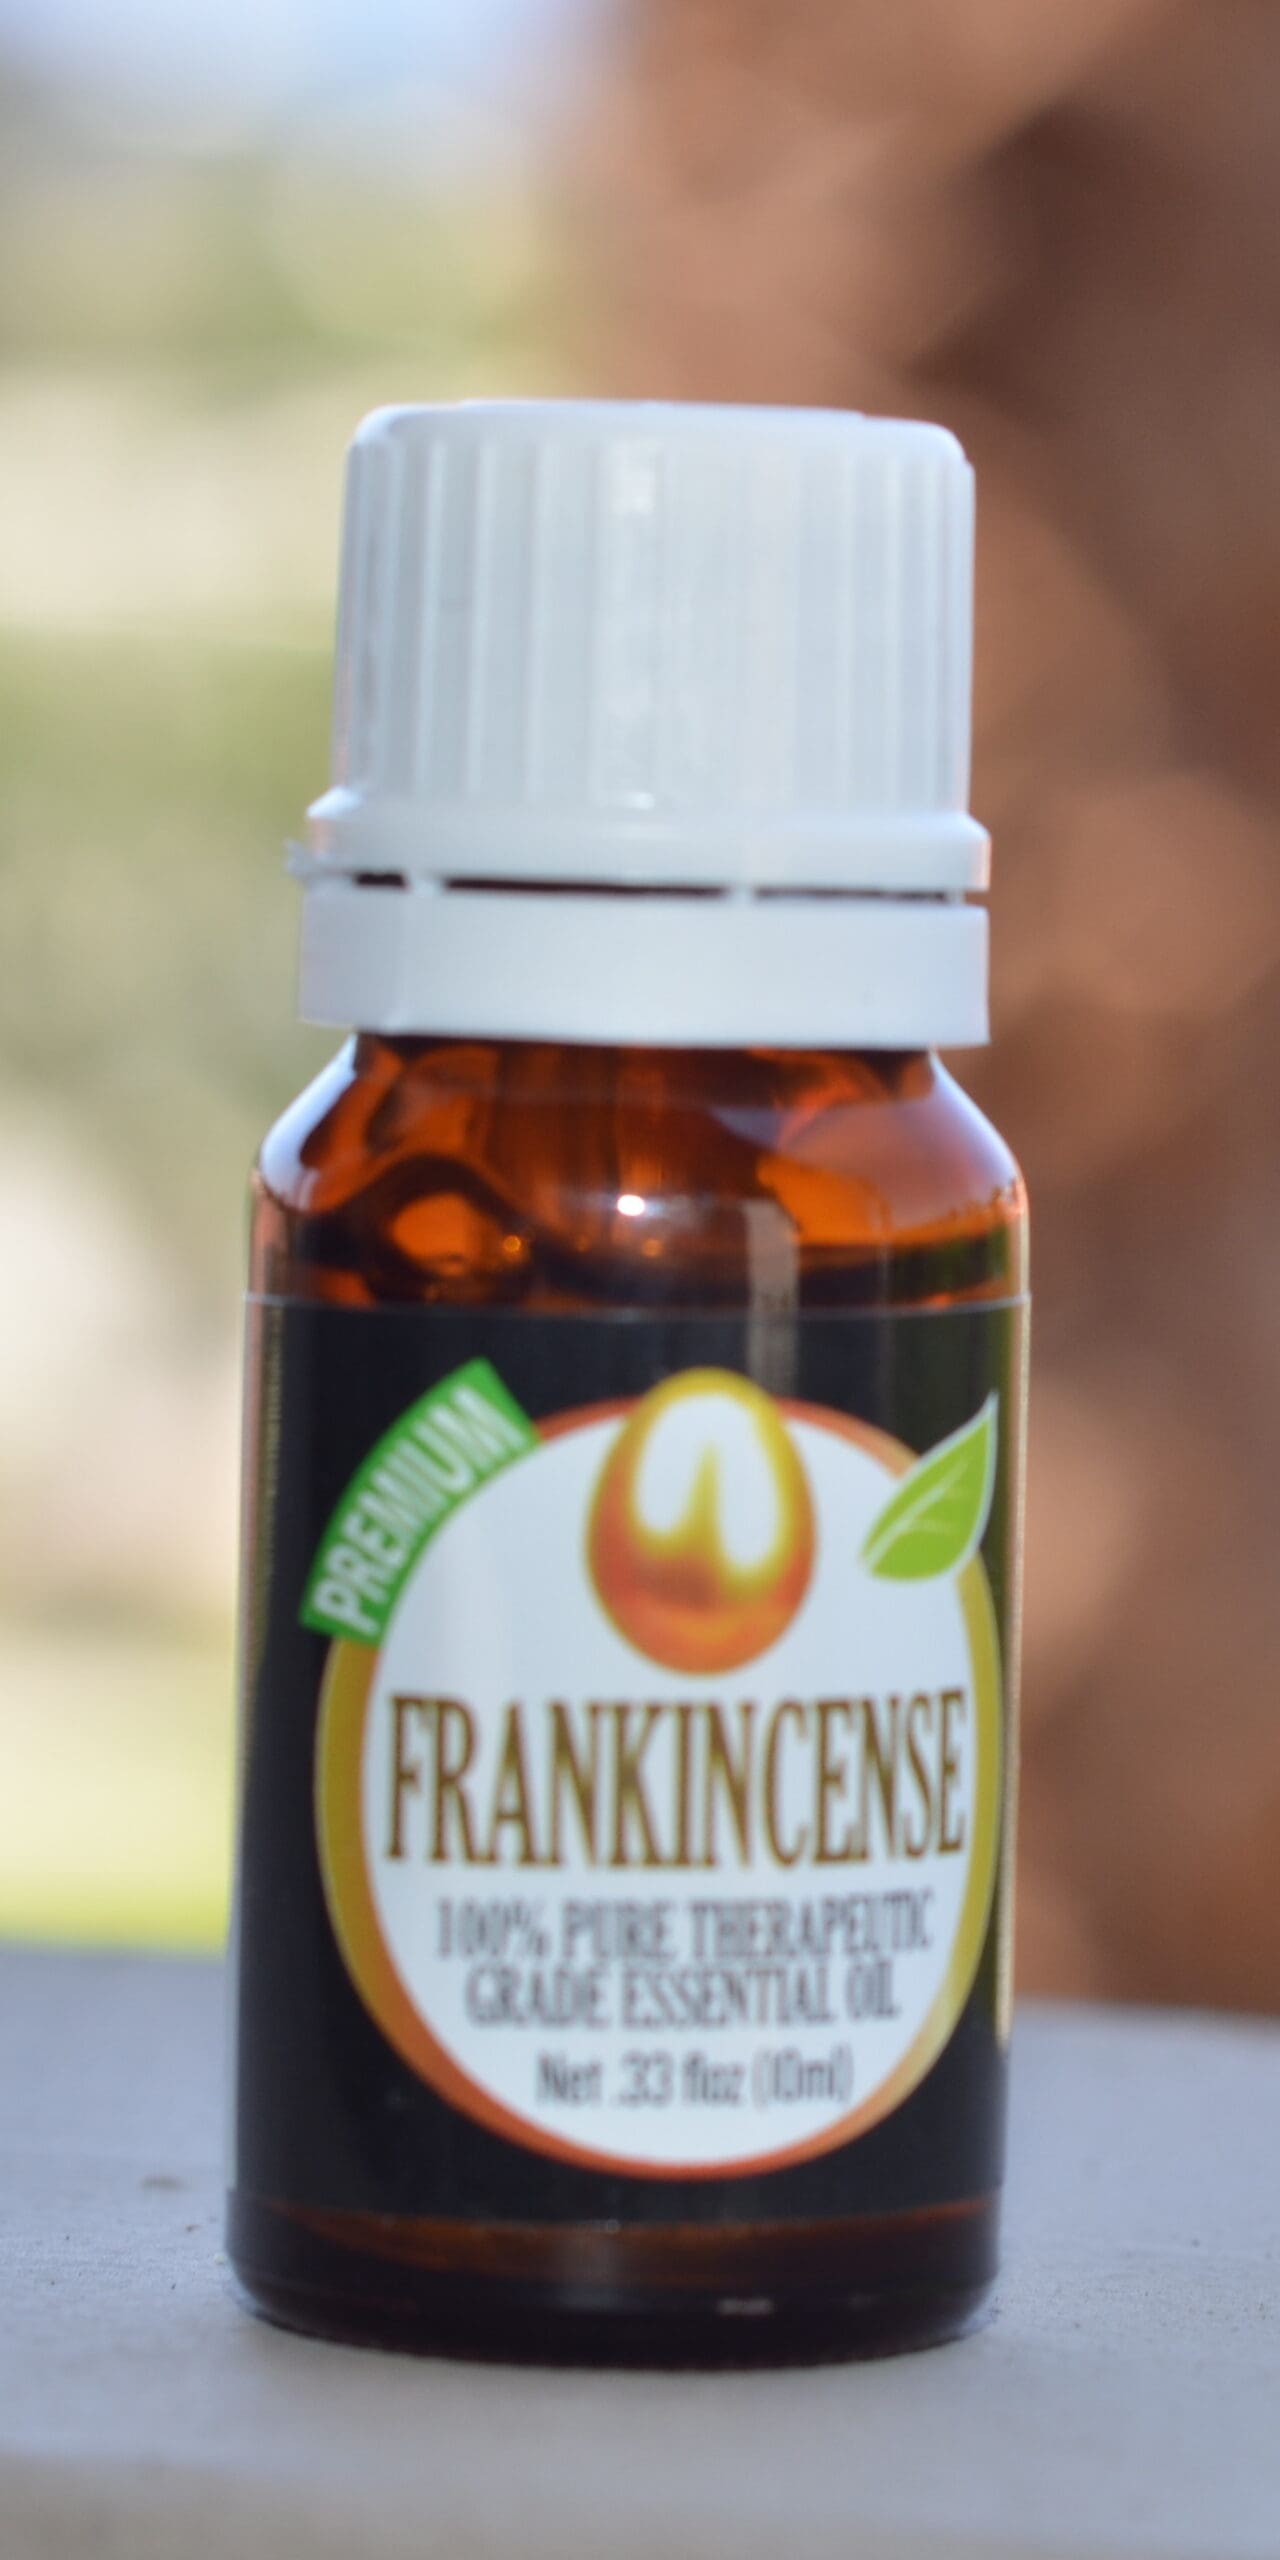 Frankincense bottle